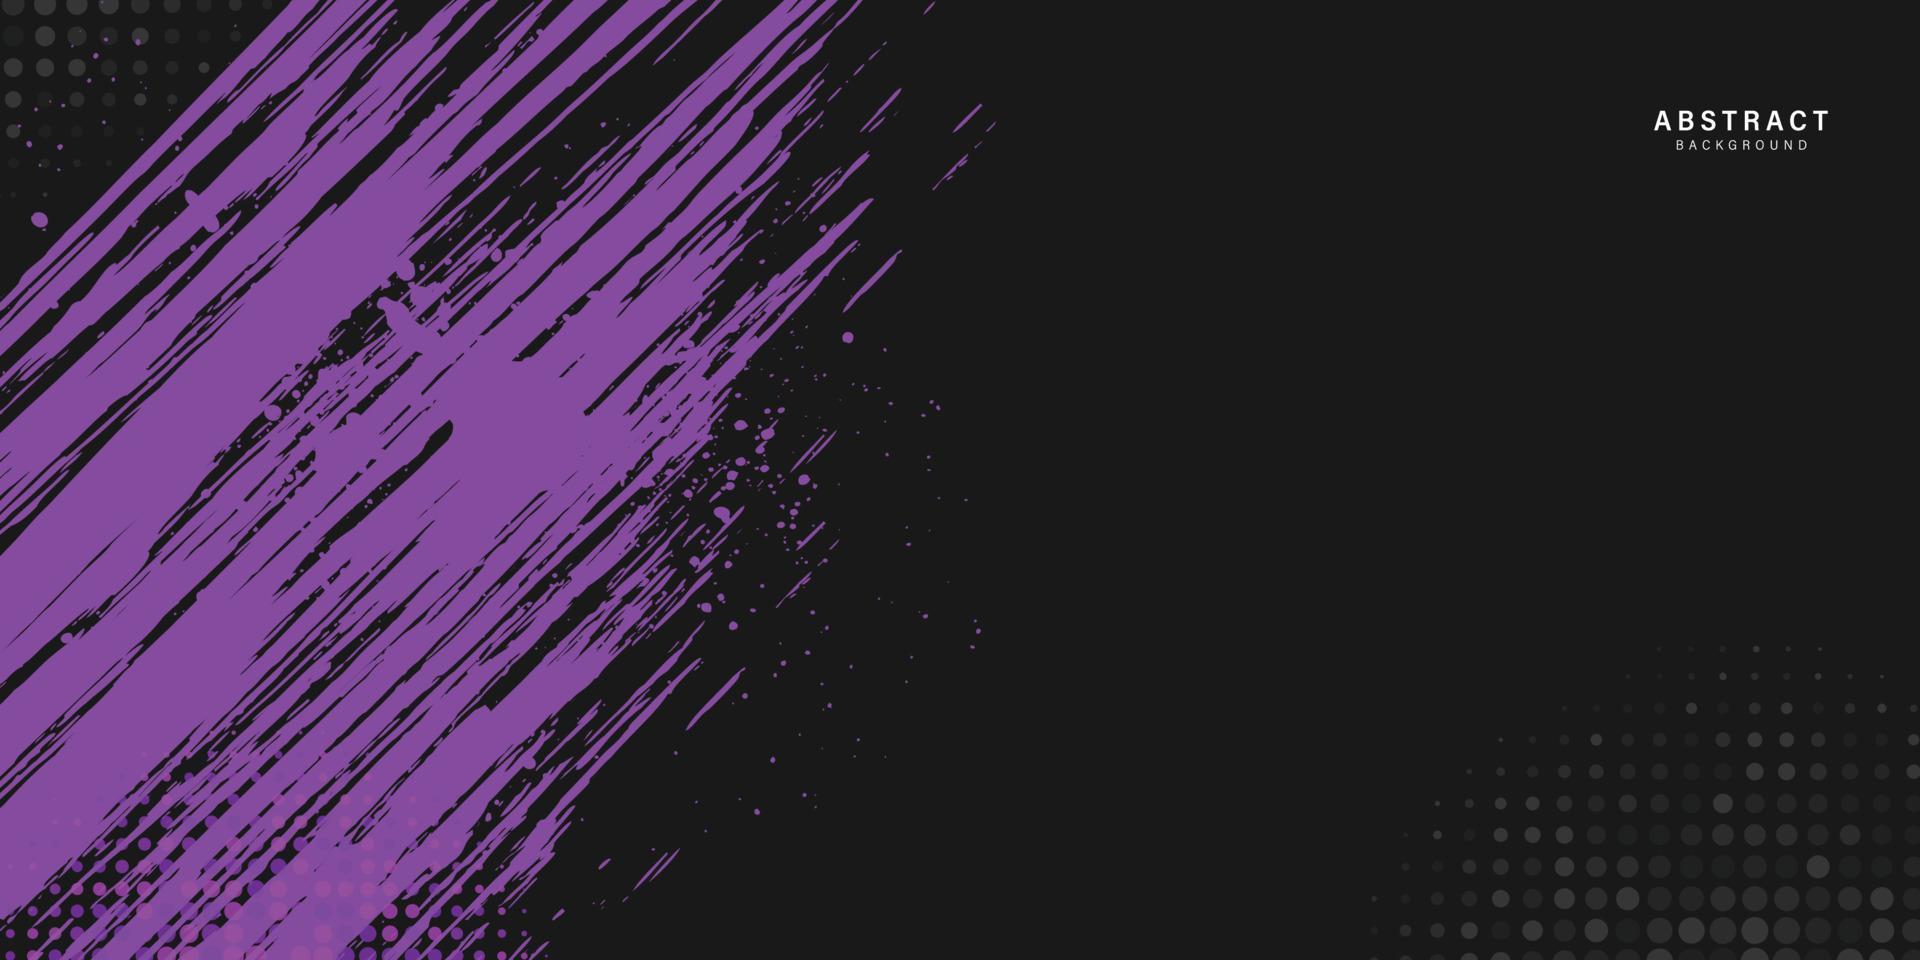 zwart en paars abstract grunge achtergrond, paars vuil grunge achtergrond gebruikt voor bedrijf, zakelijk, instelling, poster, sjabloon, partij, feestelijk, seminarie, vector, illustratie vector